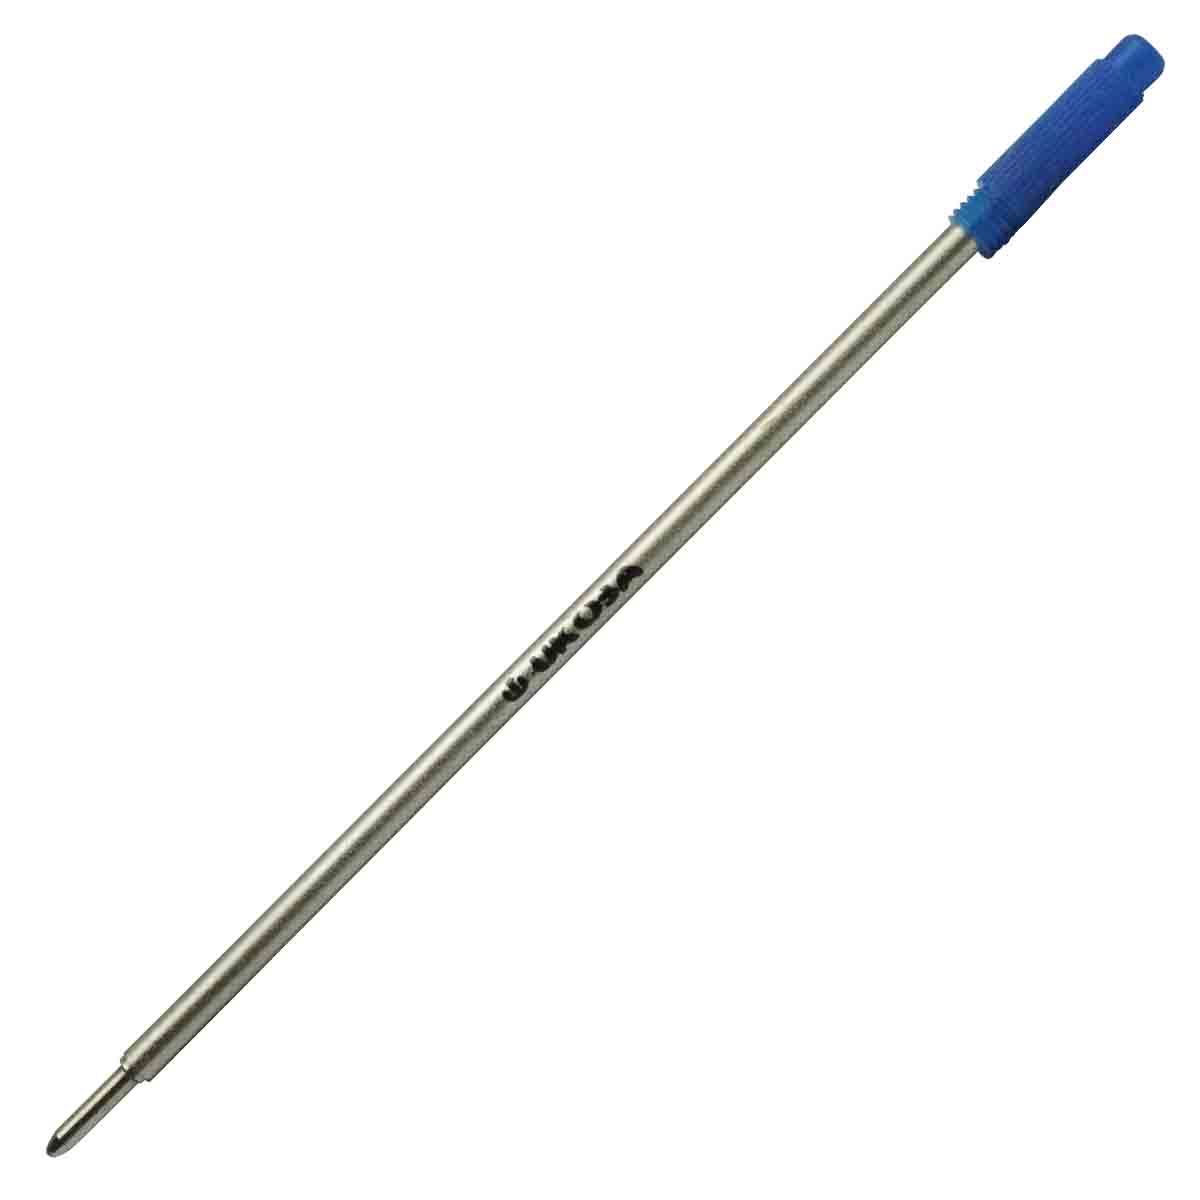 Ukoba 1.0mm Blue Twist Ball Pen Refill Model 71055